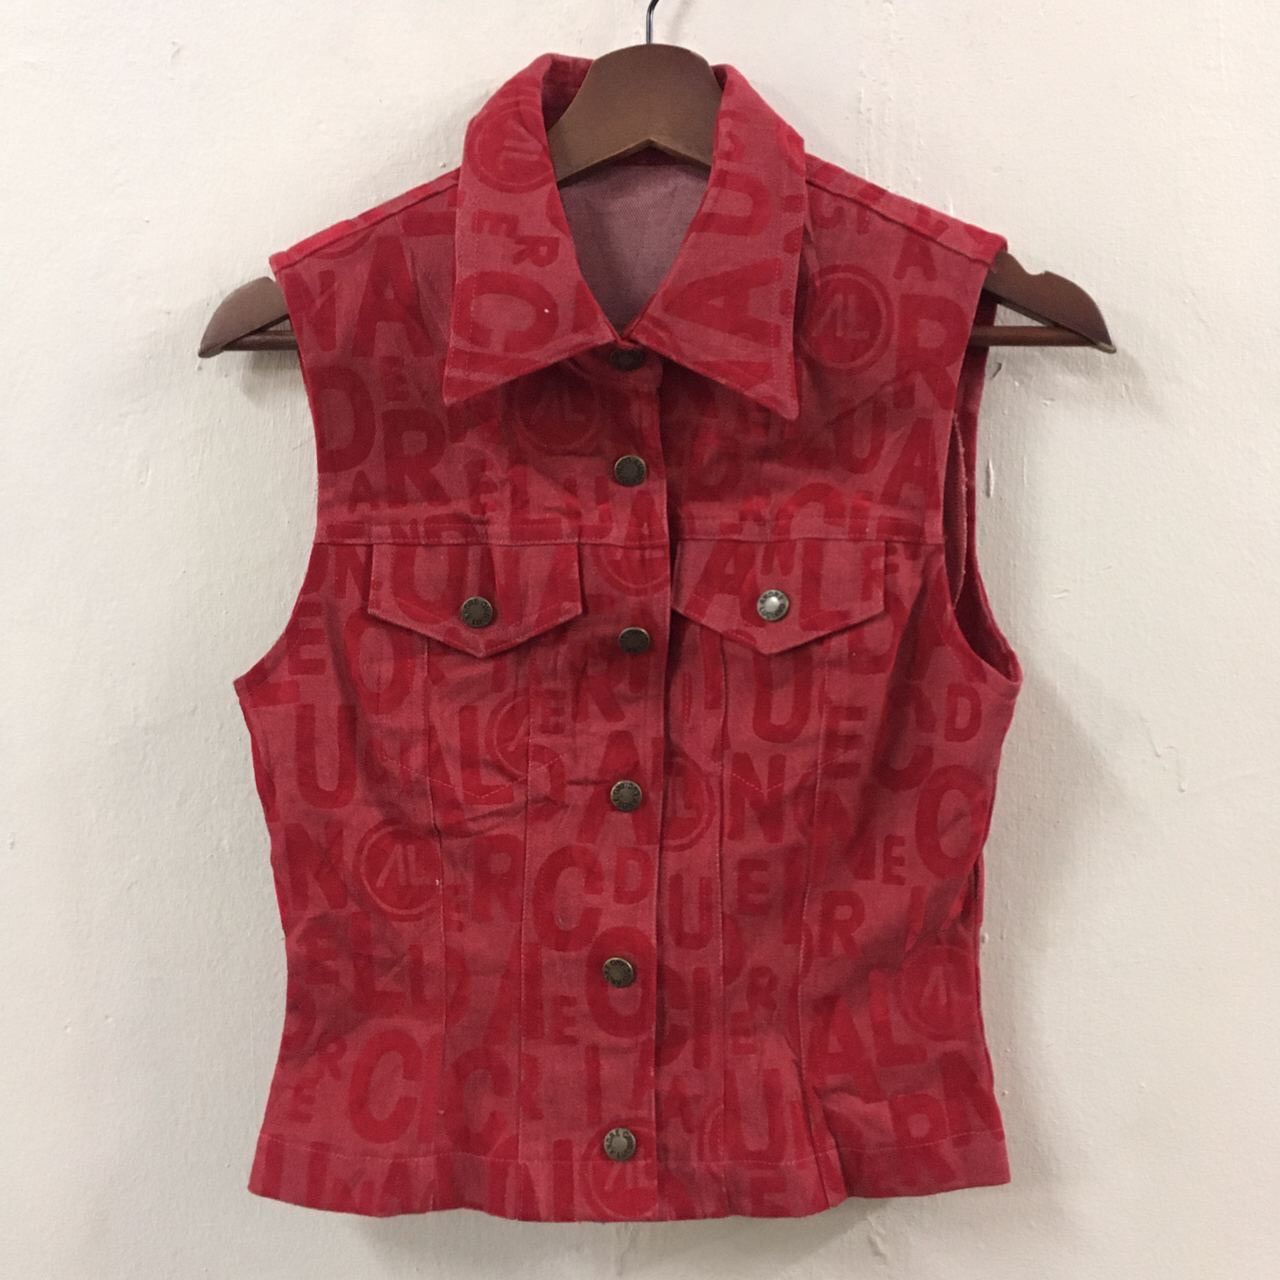 Avant Garde Vintage Andreluciano Full Print Vest | Grailed